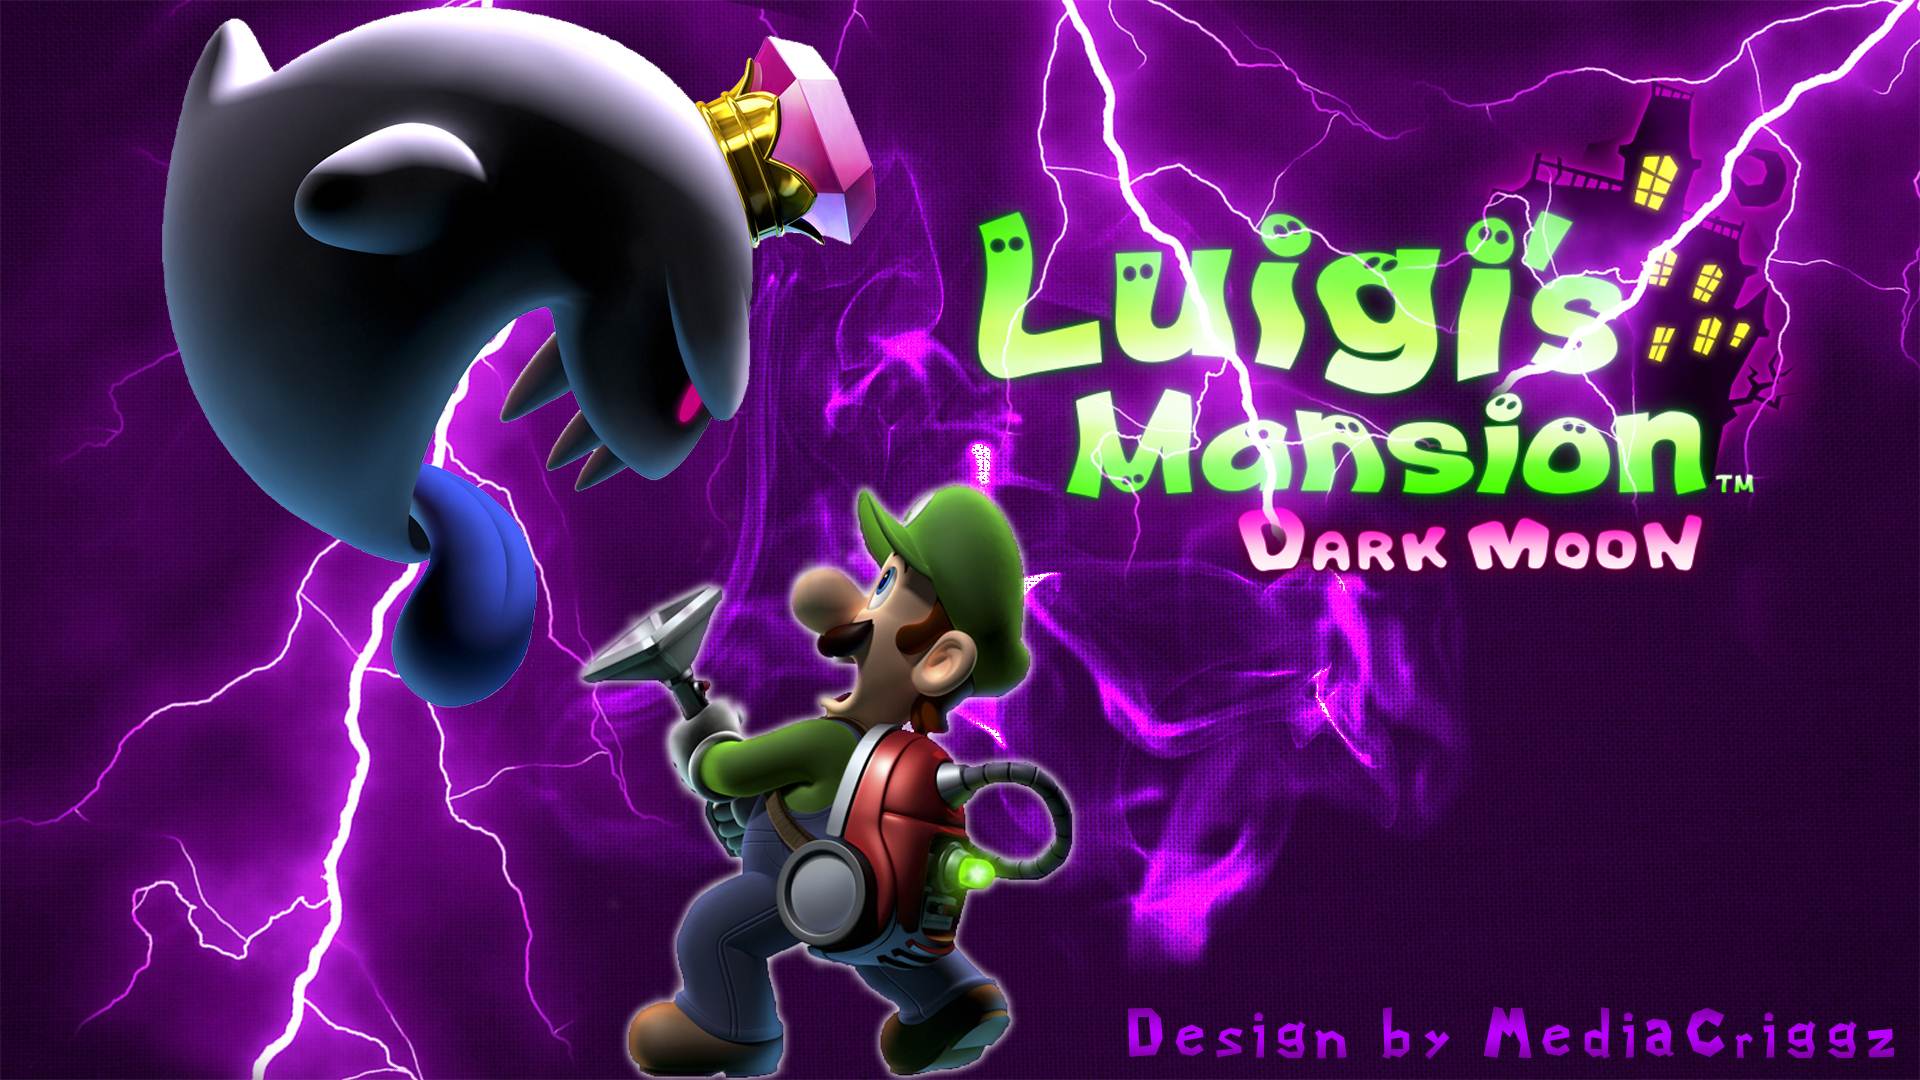 luigis mansion dark moon a 4 download free